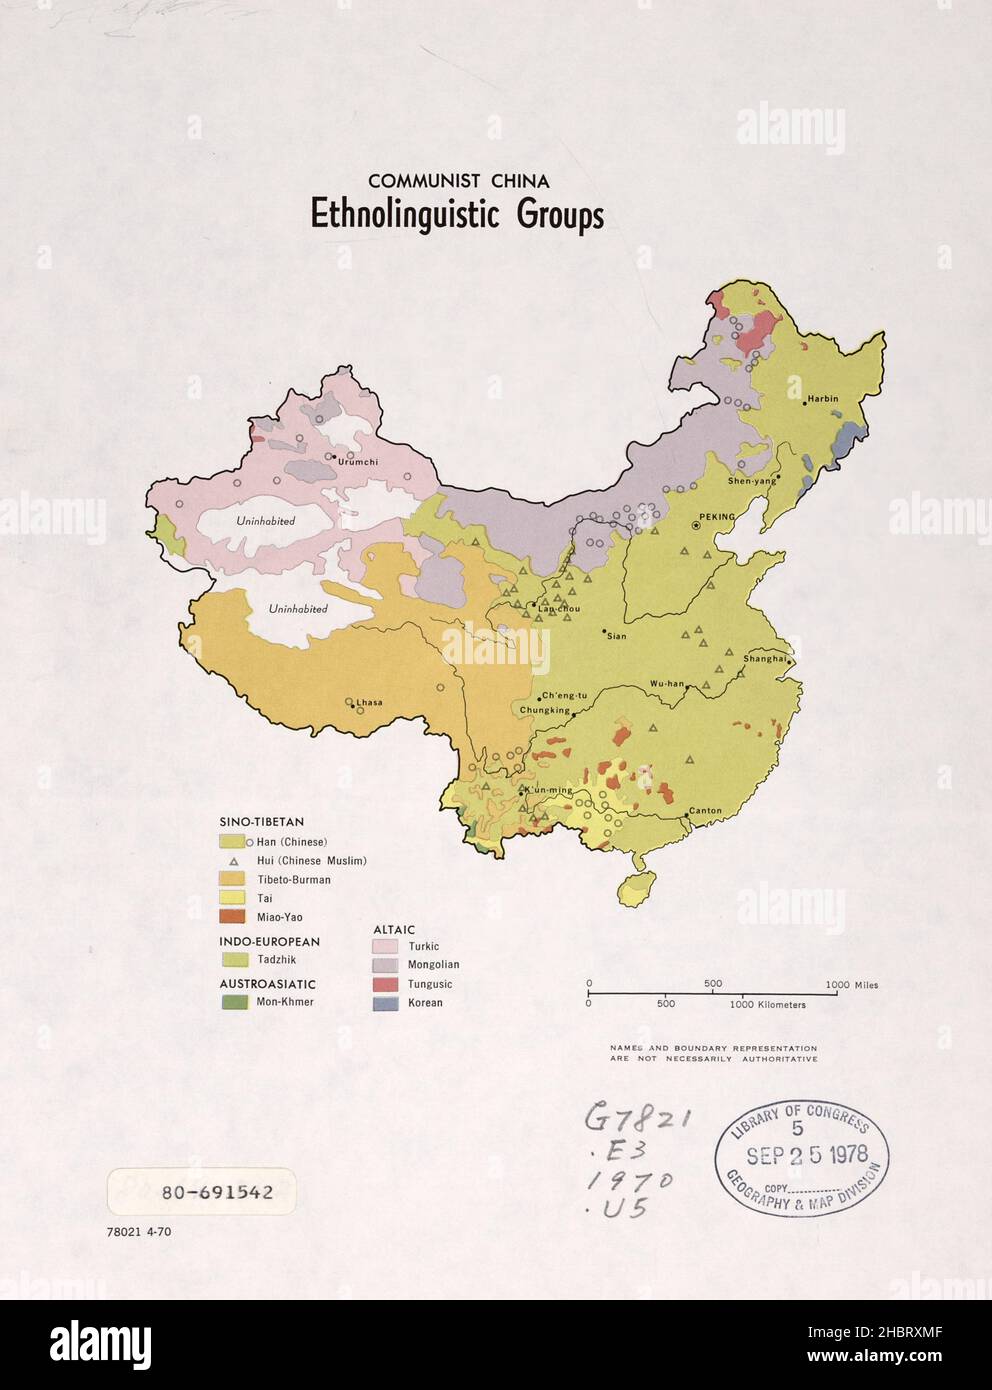 Die ethnologischen Gruppen des kommunistischen China bilden die Karte Ca. 1970 Stockfoto